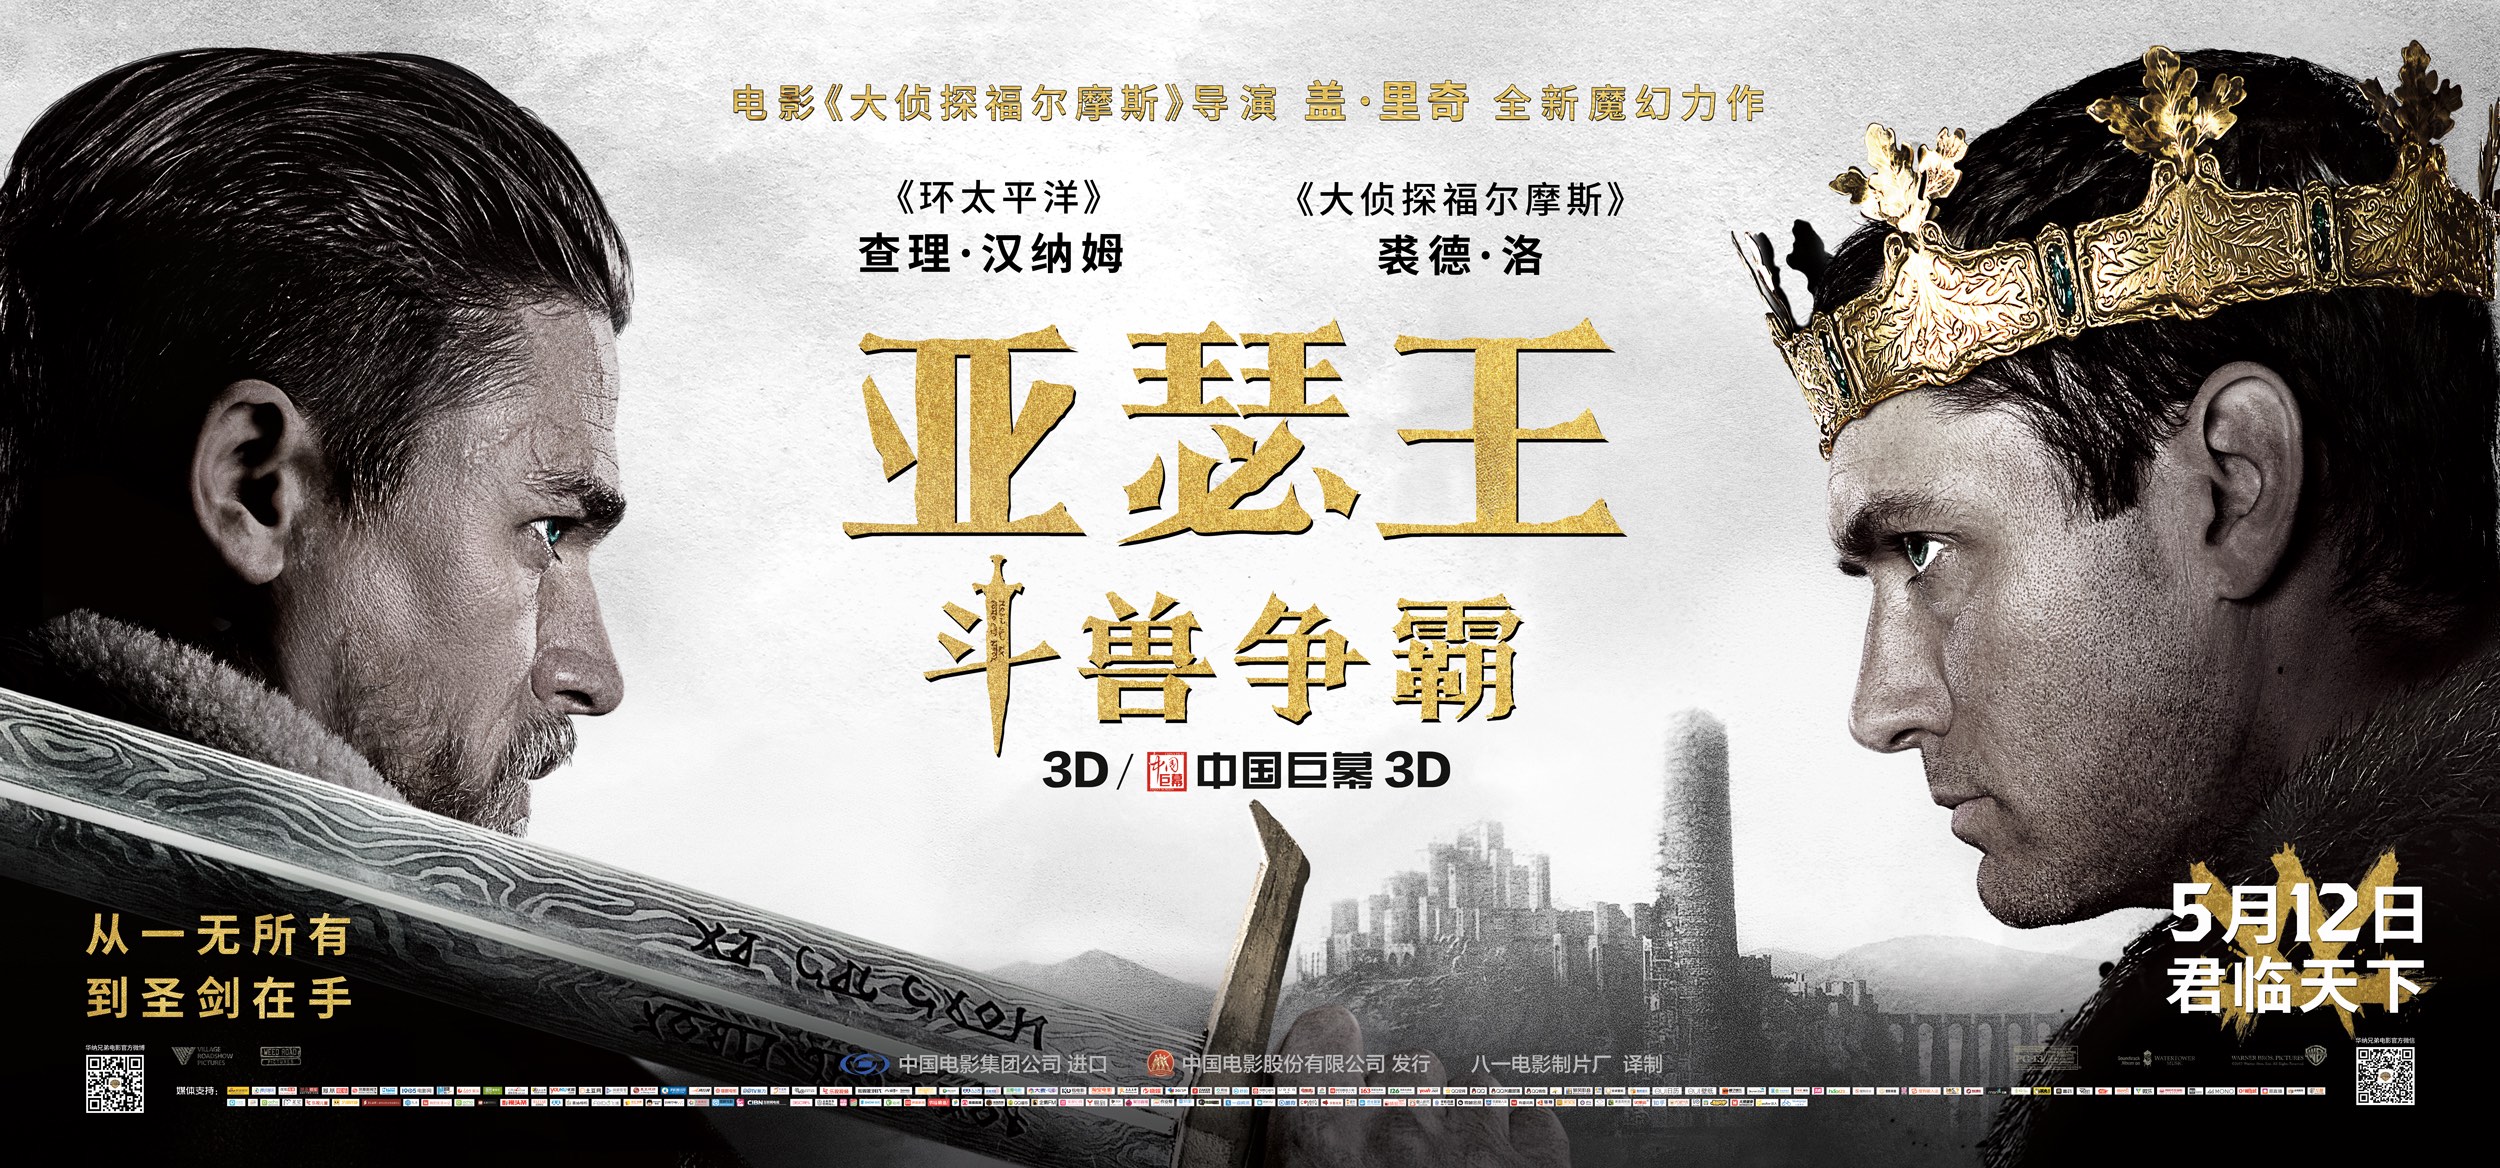 《亚瑟王》发布中国版预告 贝克汉姆首登中国银幕